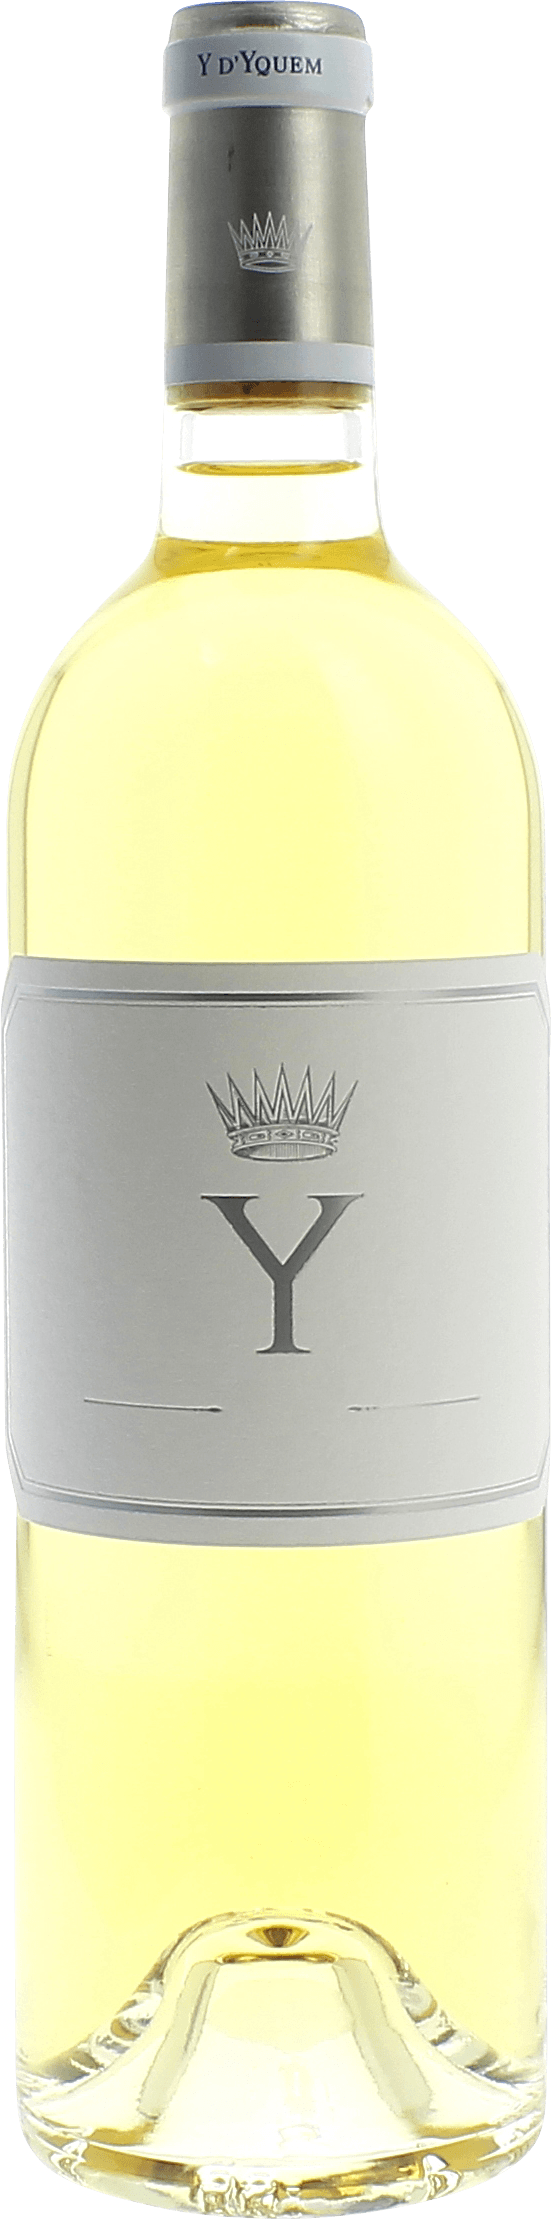 Y de yquem (disponible en dcembre 2019) 2018  , Bordeaux blanc